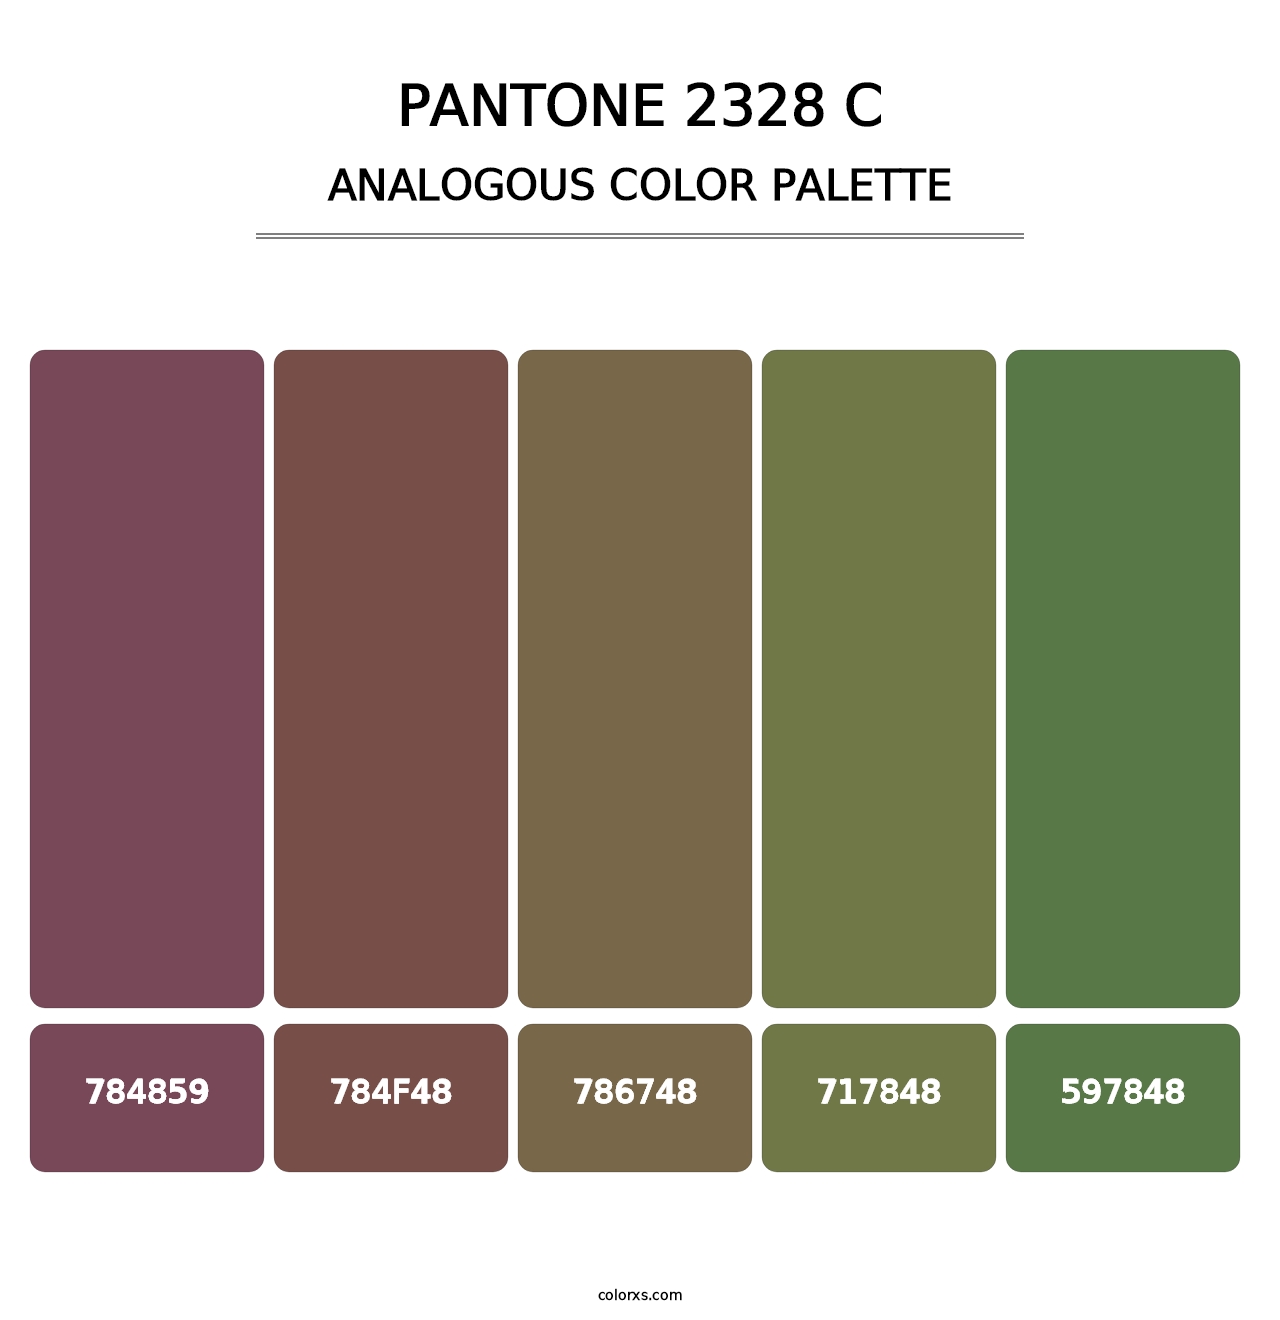 PANTONE 2328 C - Analogous Color Palette